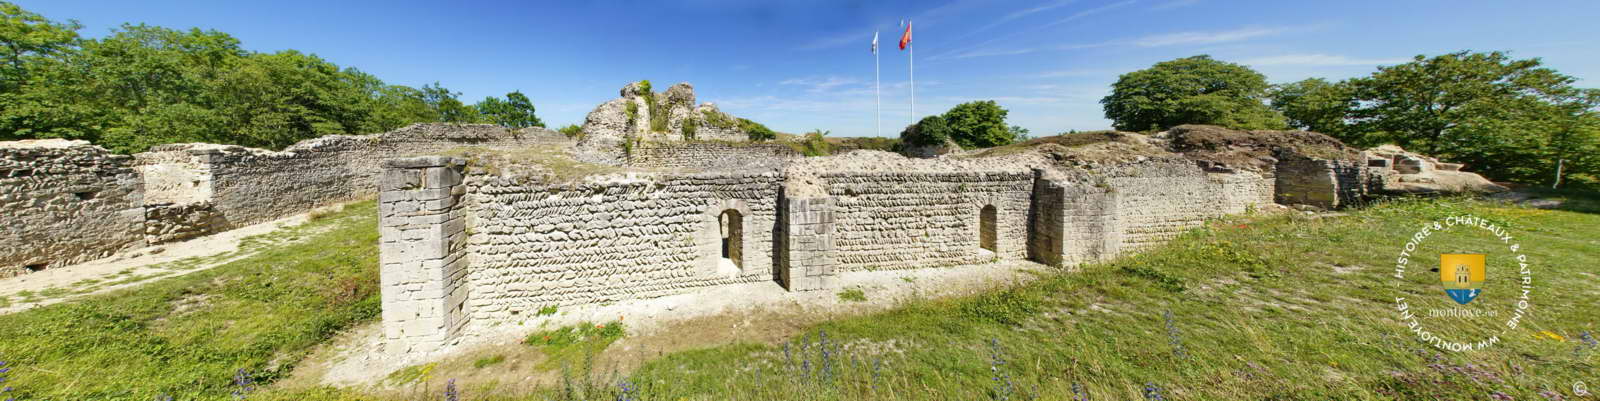 chateau ivry la bataille normandie